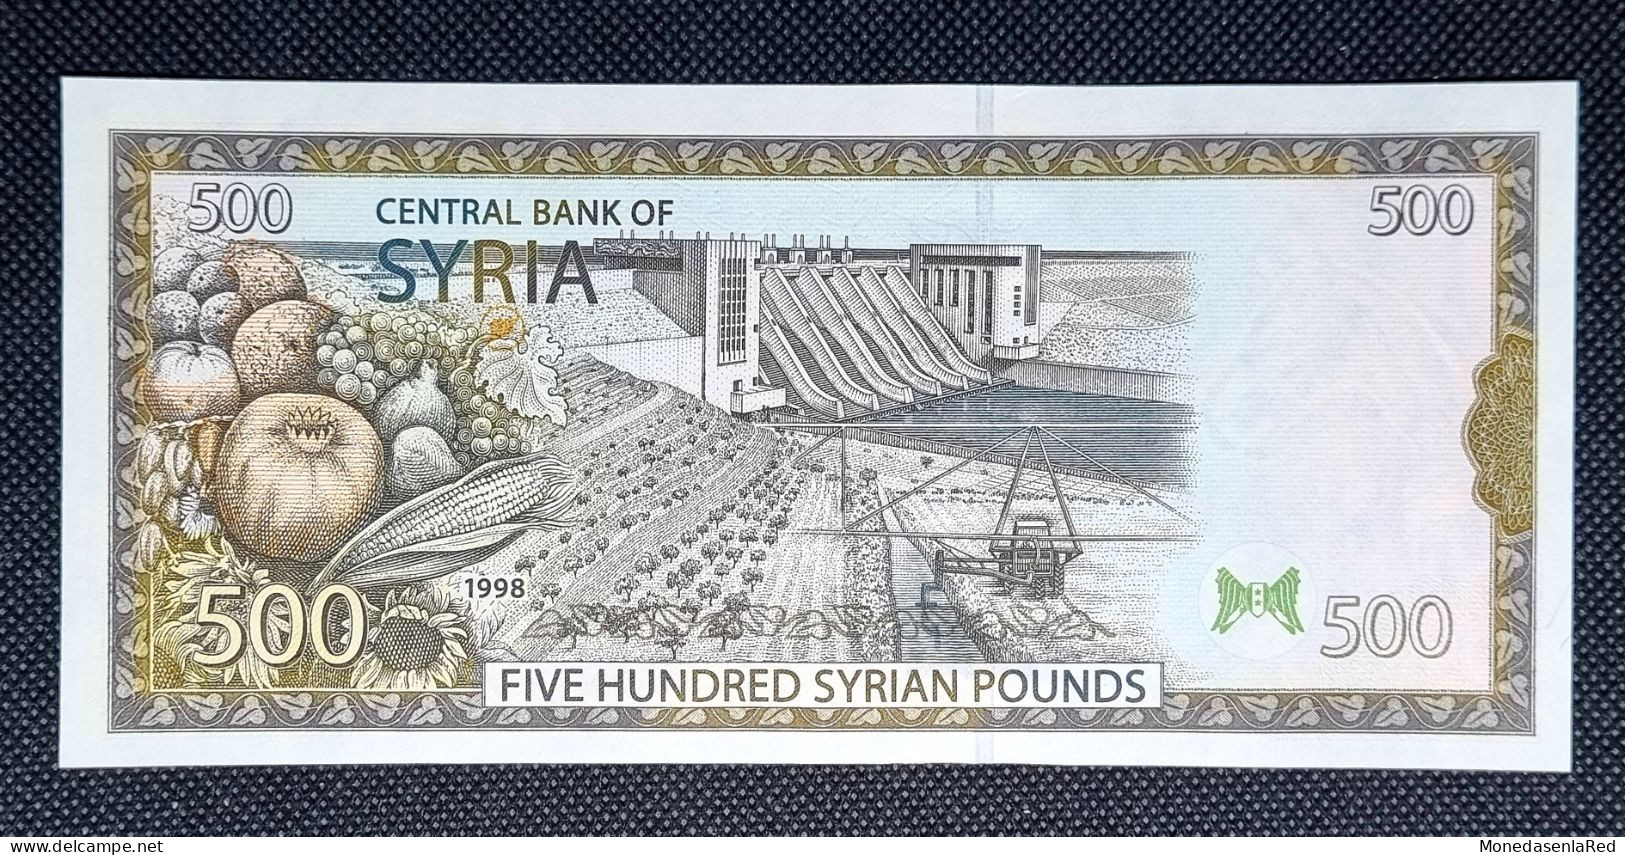 SIRIA / SYRIA 500 LIBRAS/ POUNDS 1998 SC / UNC. P-110c - Siria